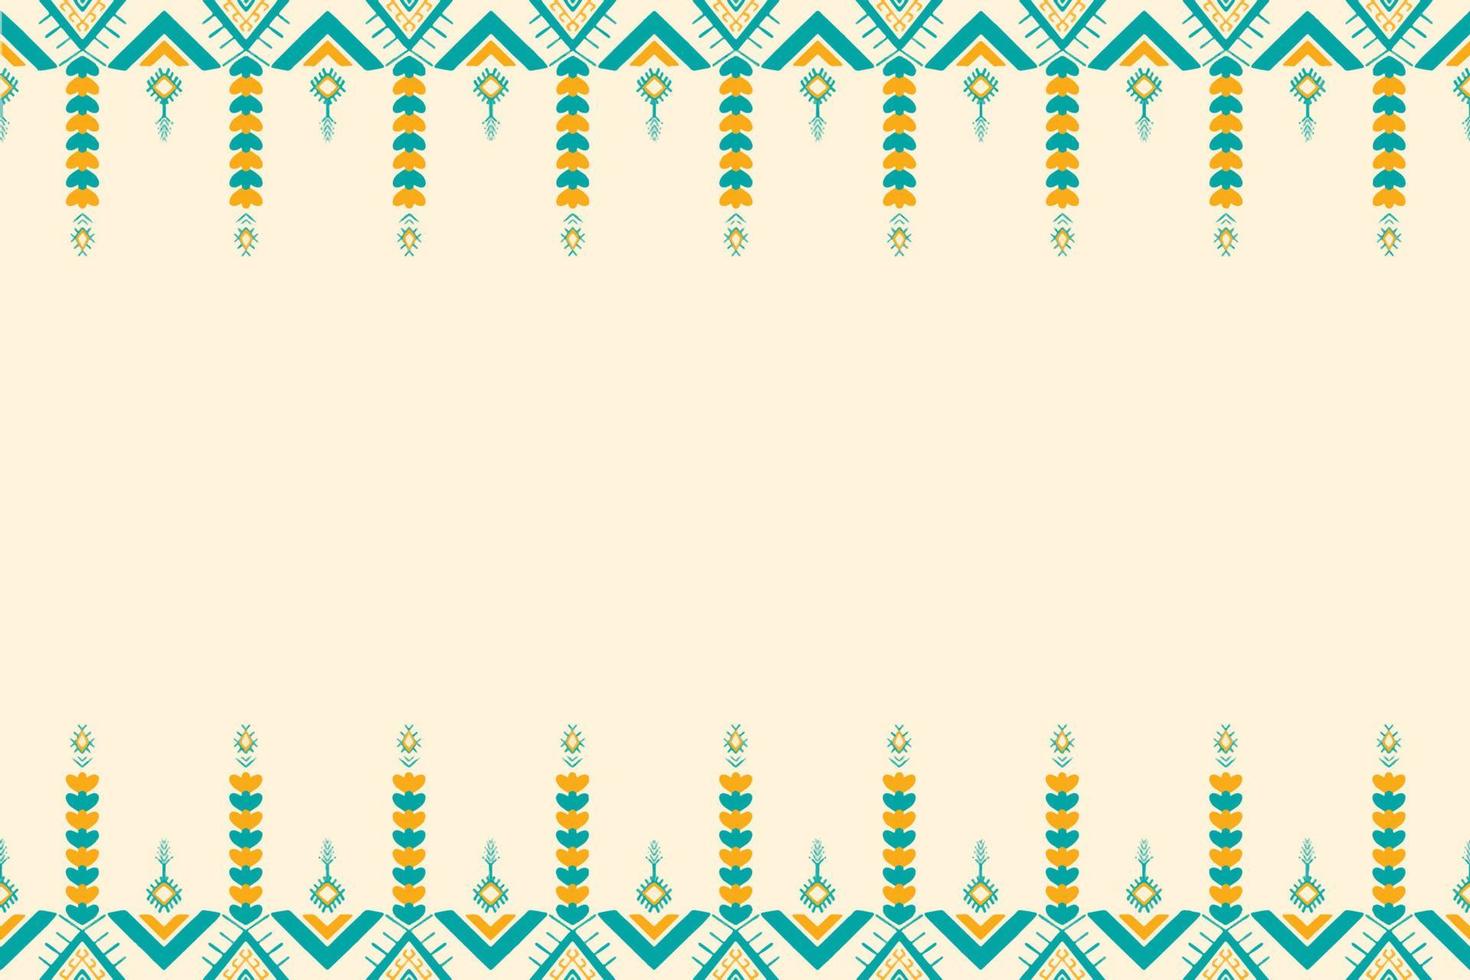 gele en groene wintertaling op ivoor. geometrische etnische oosterse patroon traditioneel ontwerp voor achtergrond, tapijt, behang, kleding, verpakking, batik, stof, vector illustratie borduurstijl